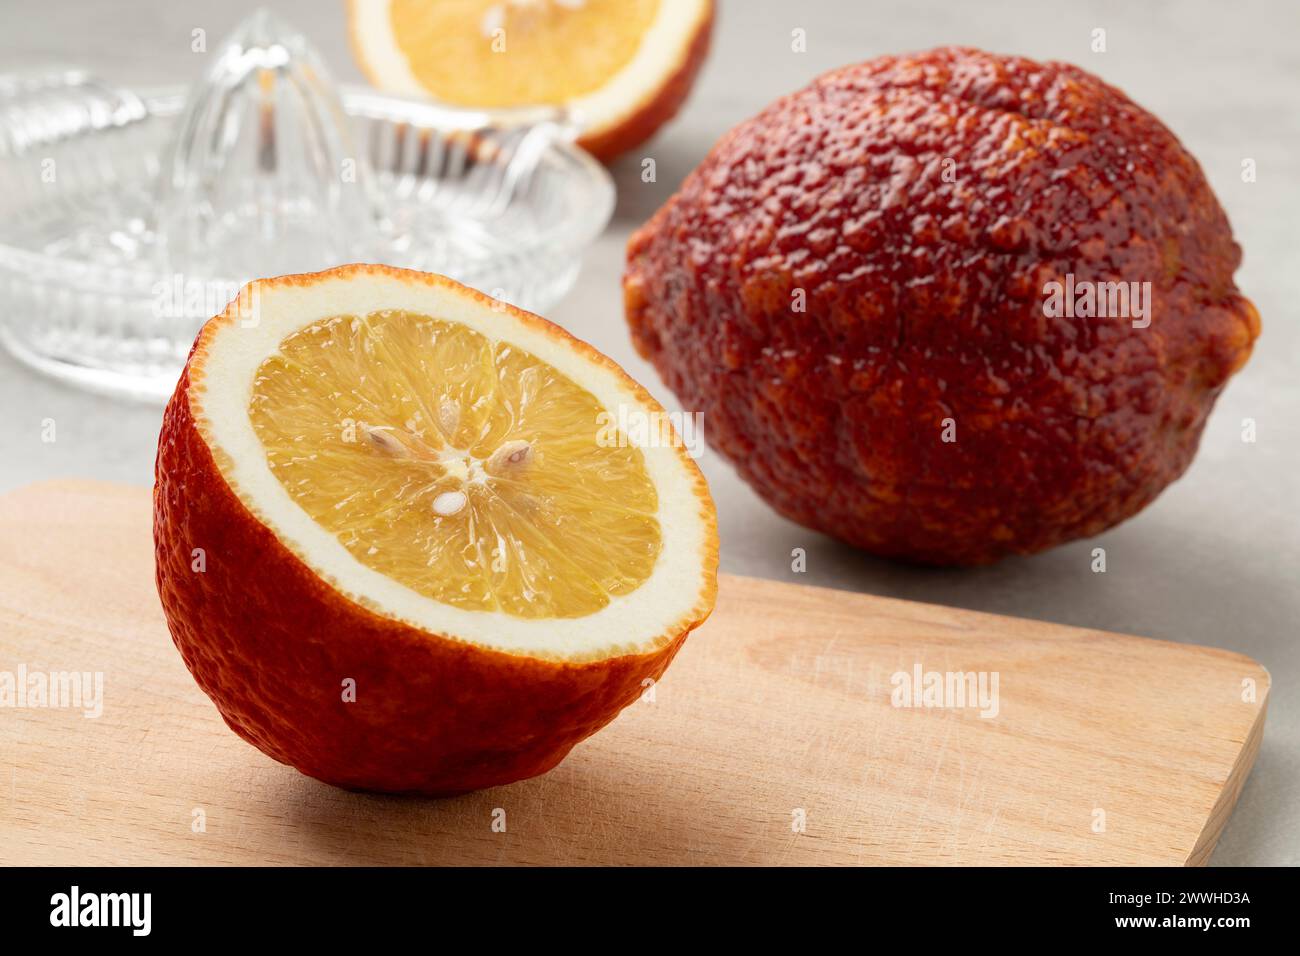 Entier et coupé en deux citrus limon frais Rosso, citron rouge, gros plan sur une planche à découper Banque D'Images